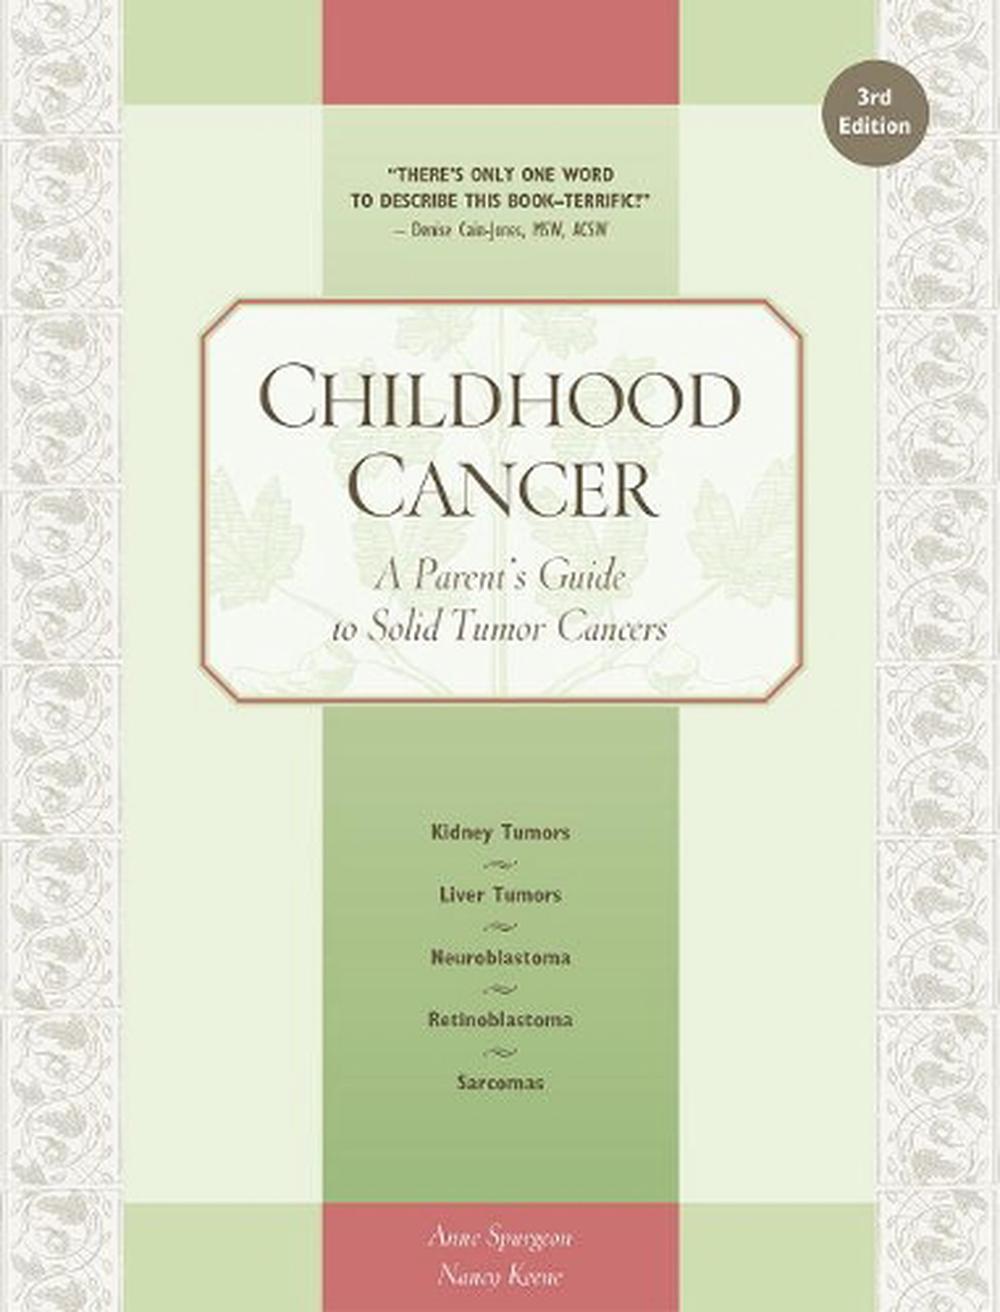 Childhood Cancer by Honna Janes-Hodder